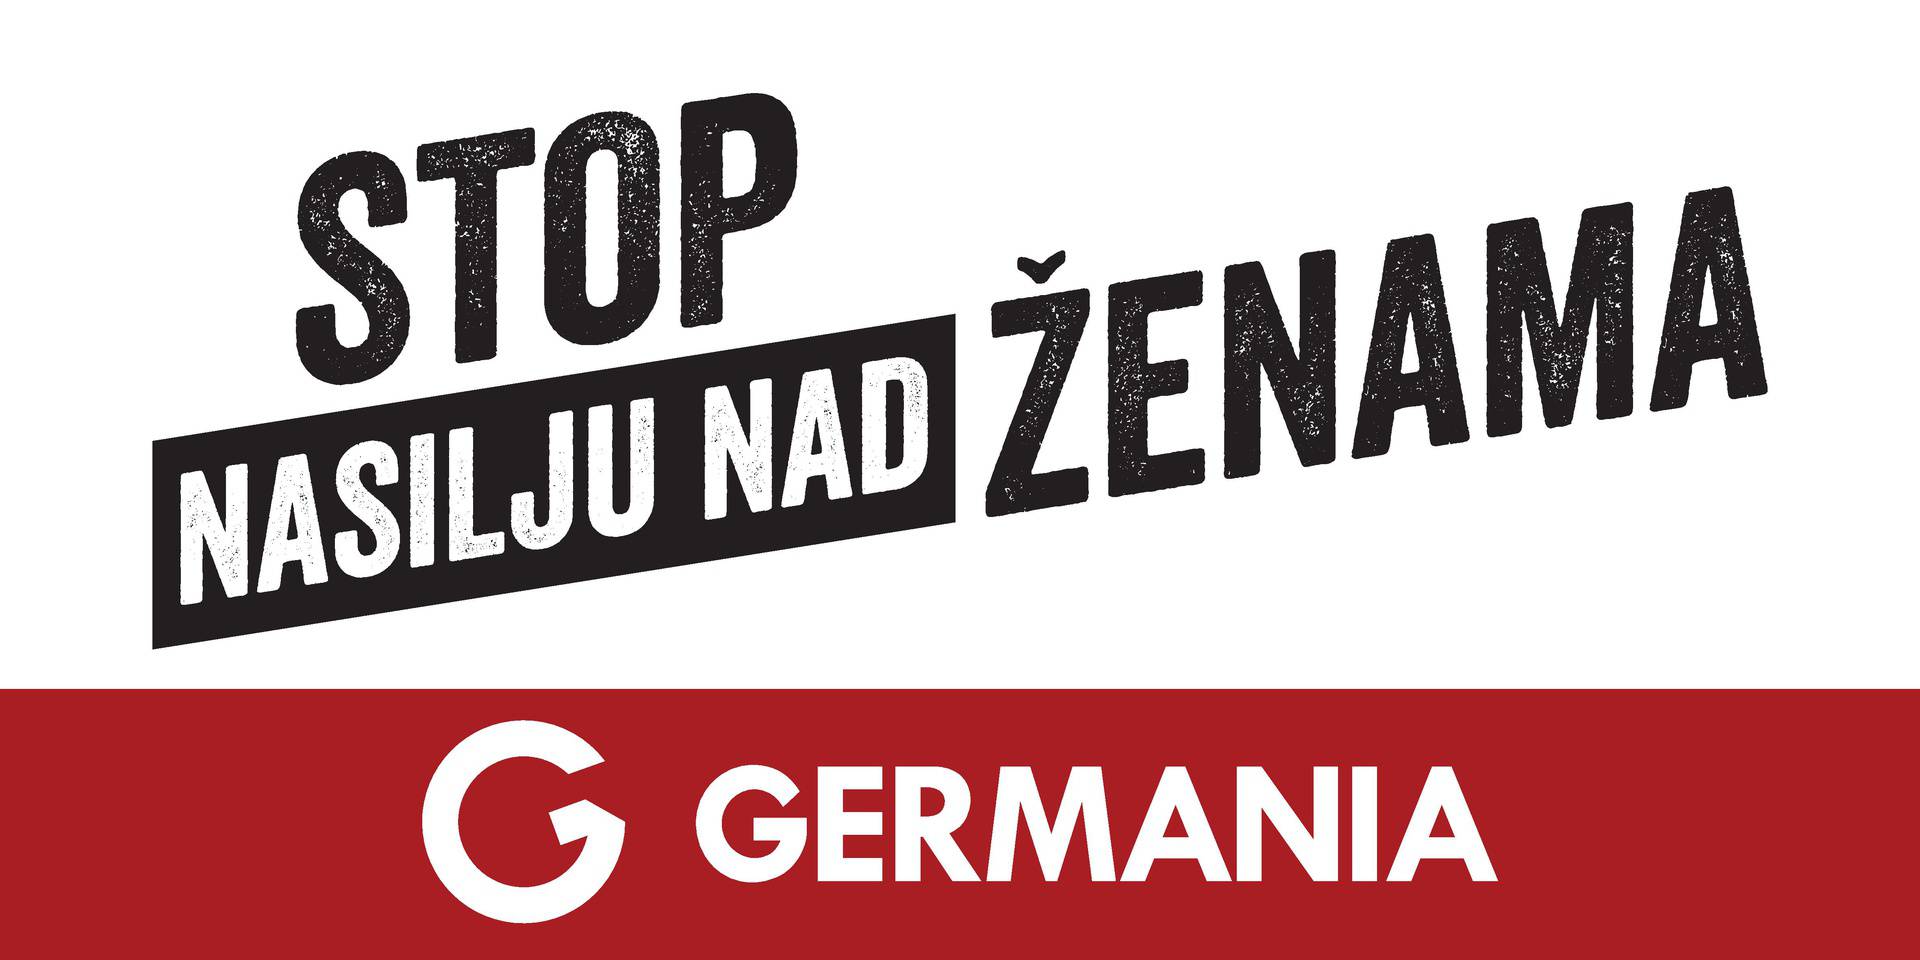 Germania nastavila akciju “Stop nasilju nad ženama” donacijom sigurnoj kućI u Čakovcu